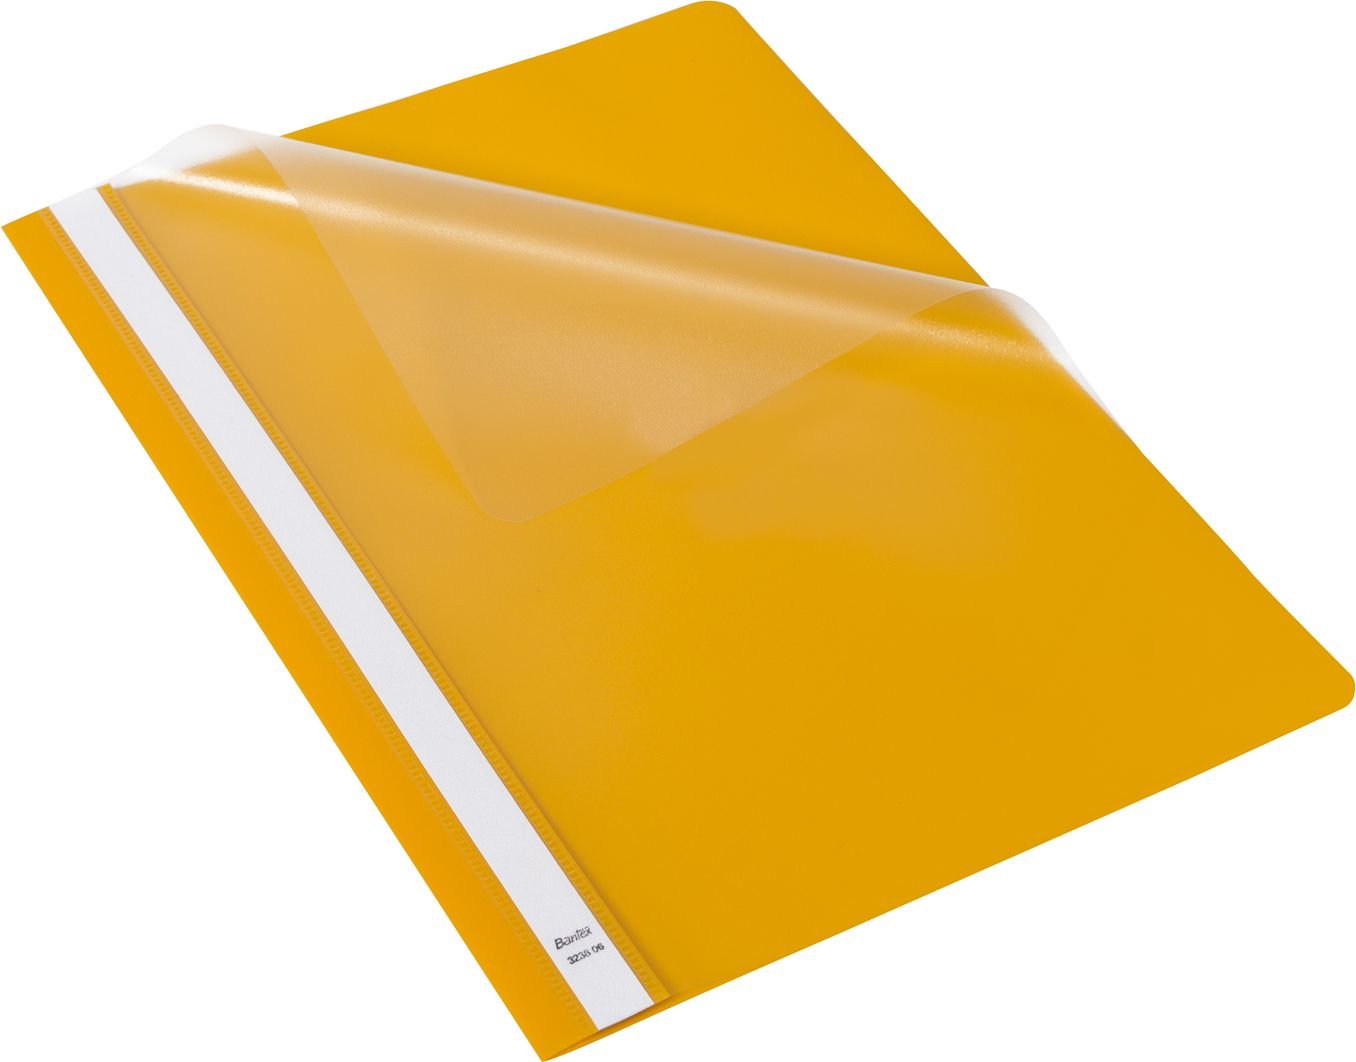 Dosare - Bantex Folder Standard A4 cu mustata galben 25 buc